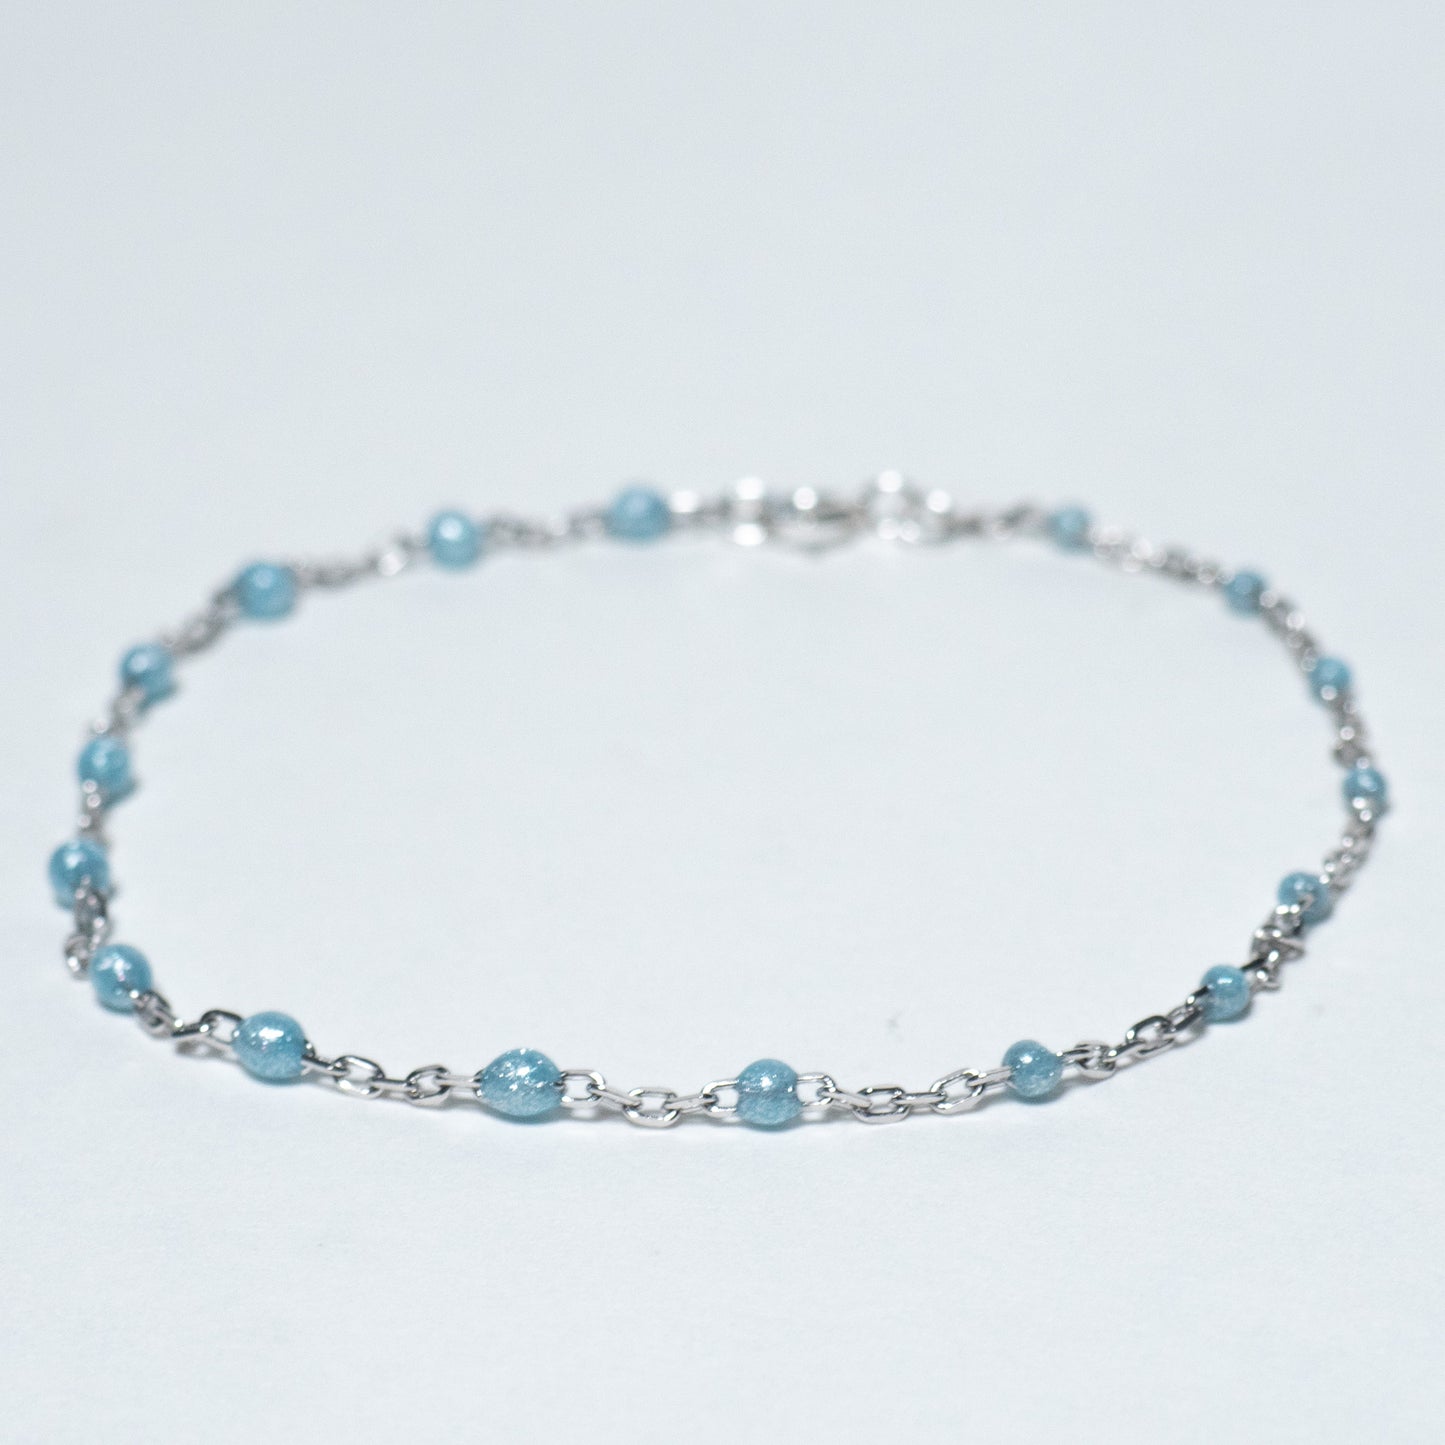 Silver Dainty Sky Blue Enamel Bead Chain Bracelet